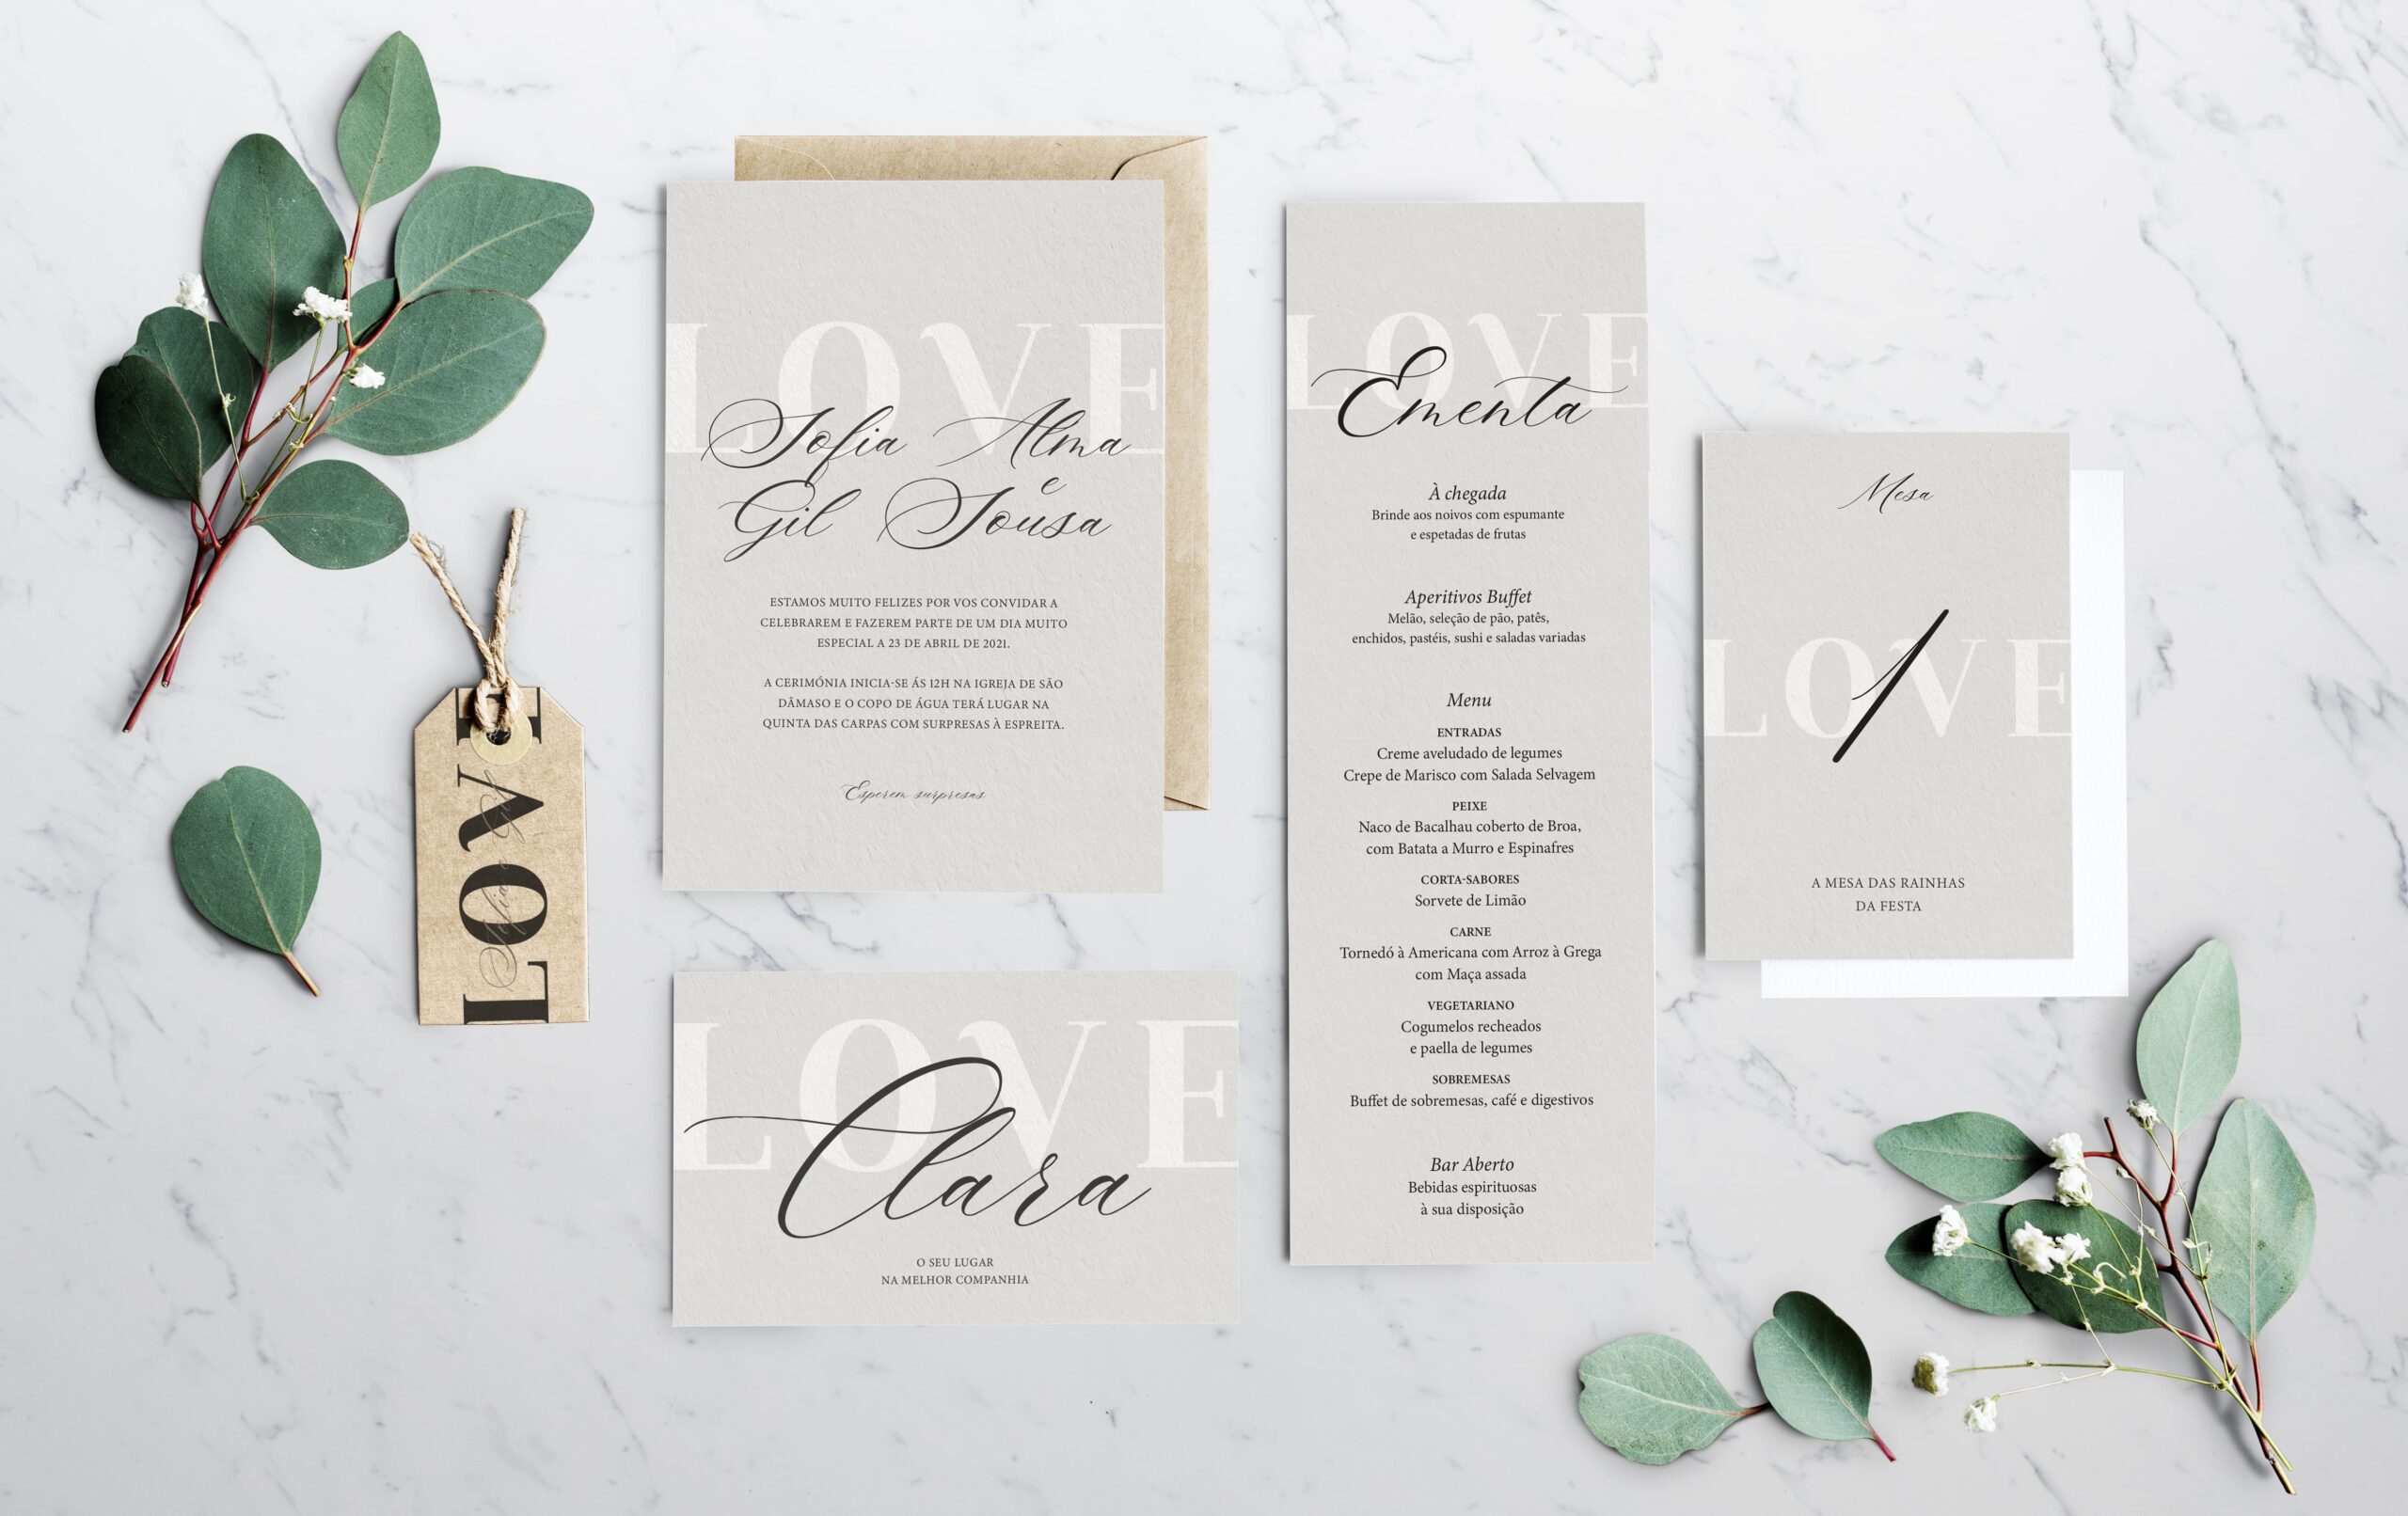 Convite de Casamento, ementa, marcador de lugar e marcador de mesa tipográfico